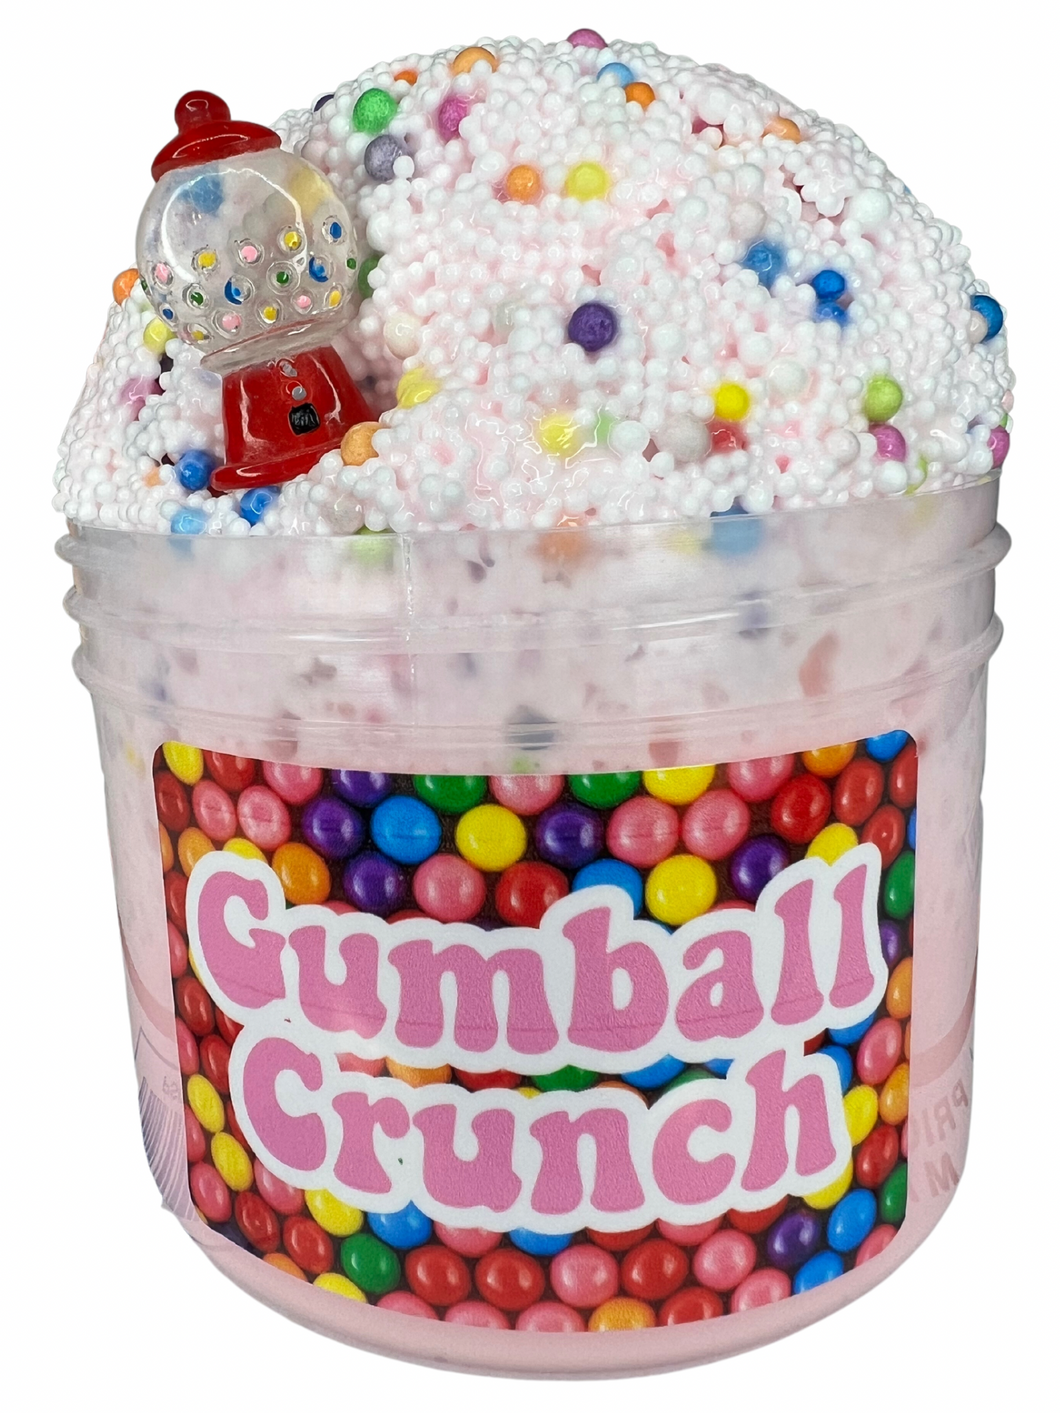 Gumball Crunch